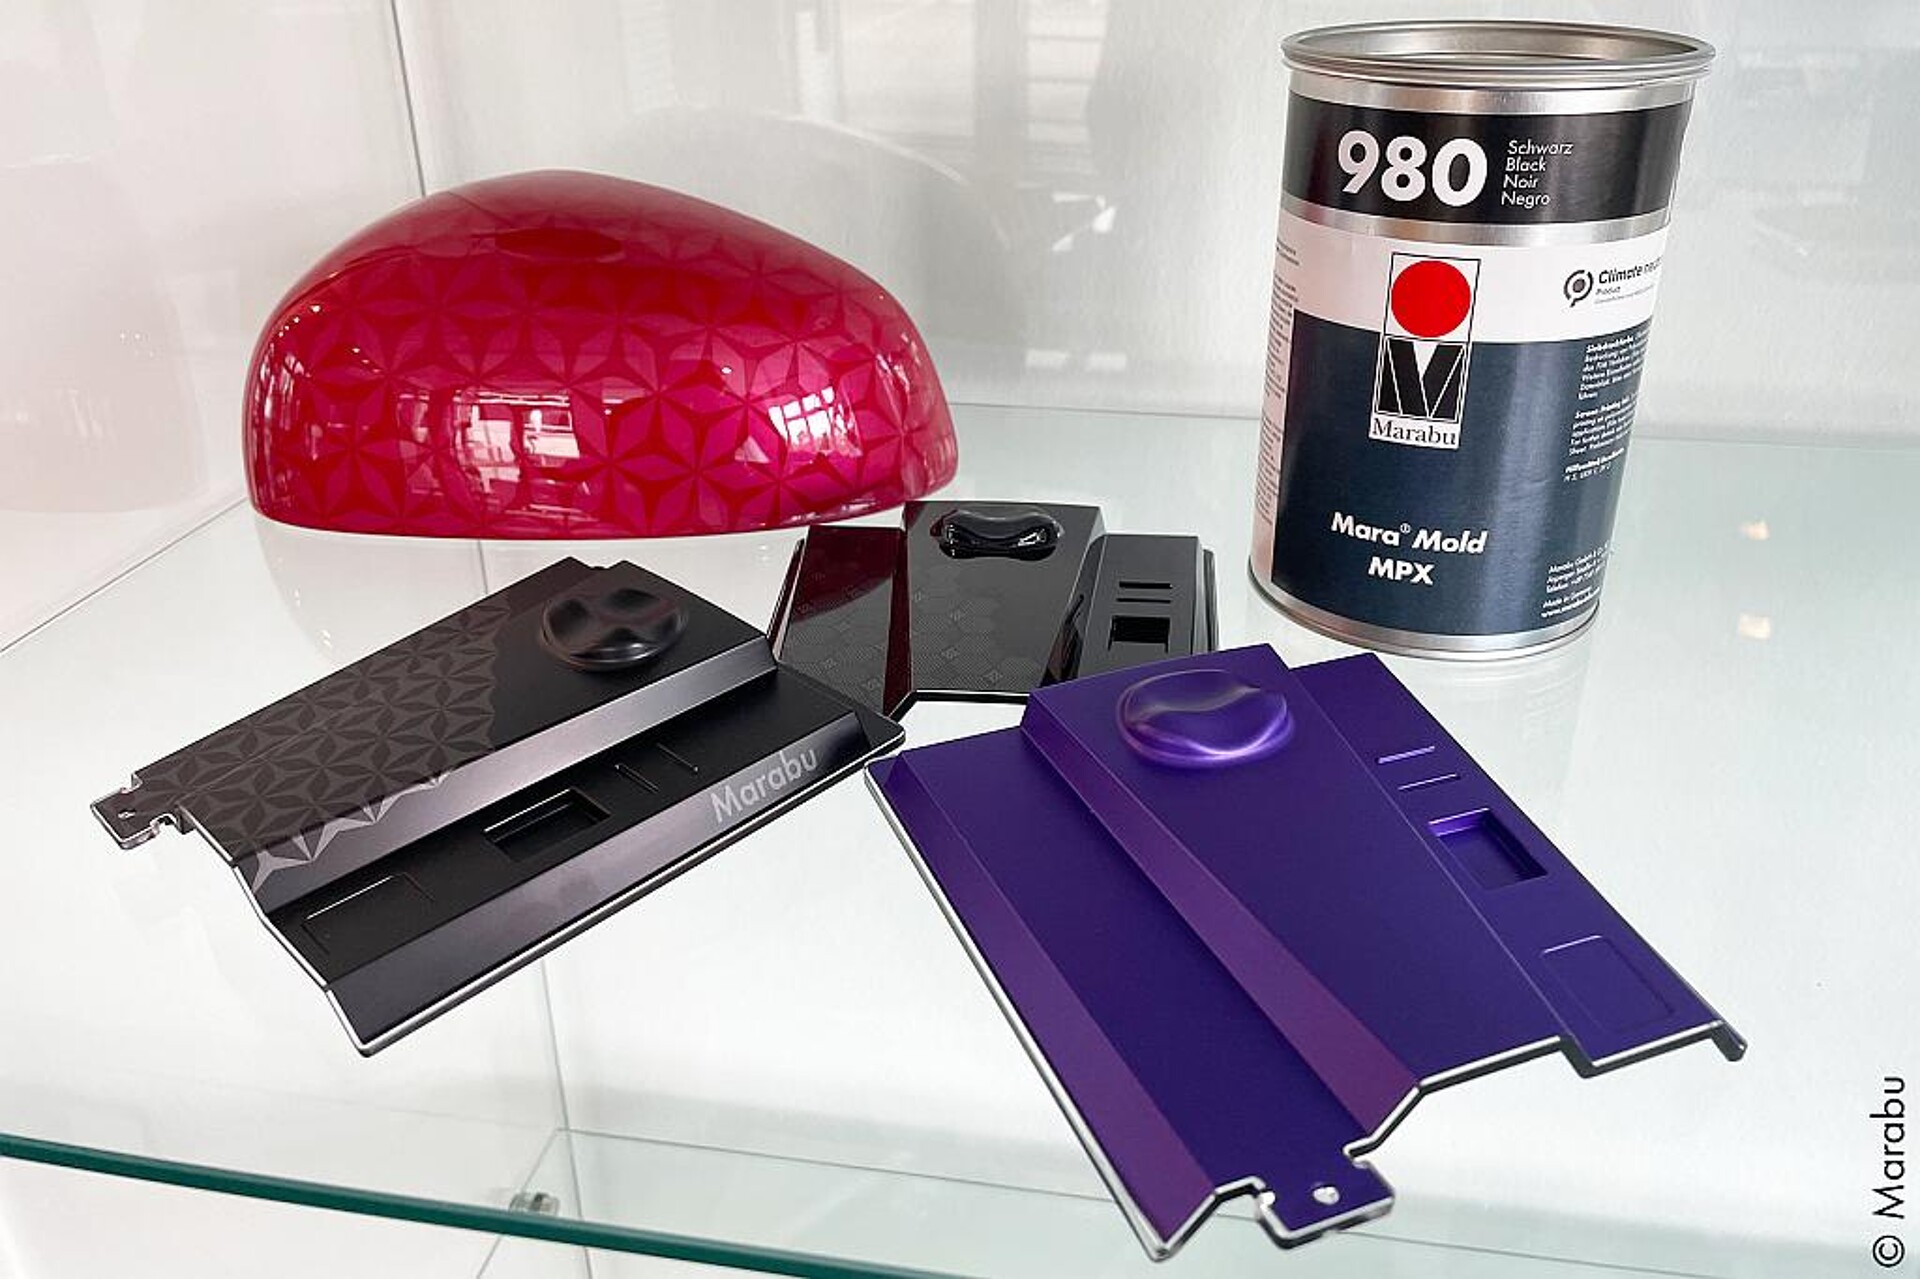 Die neue Siebdruckfarbe Mara Mold MPX wurde speziell für Film-Insert-Molding-Anwendungen (FIM) auf Polycarbonat-Folien (PC) entwickelt. (Foto: Marabu)